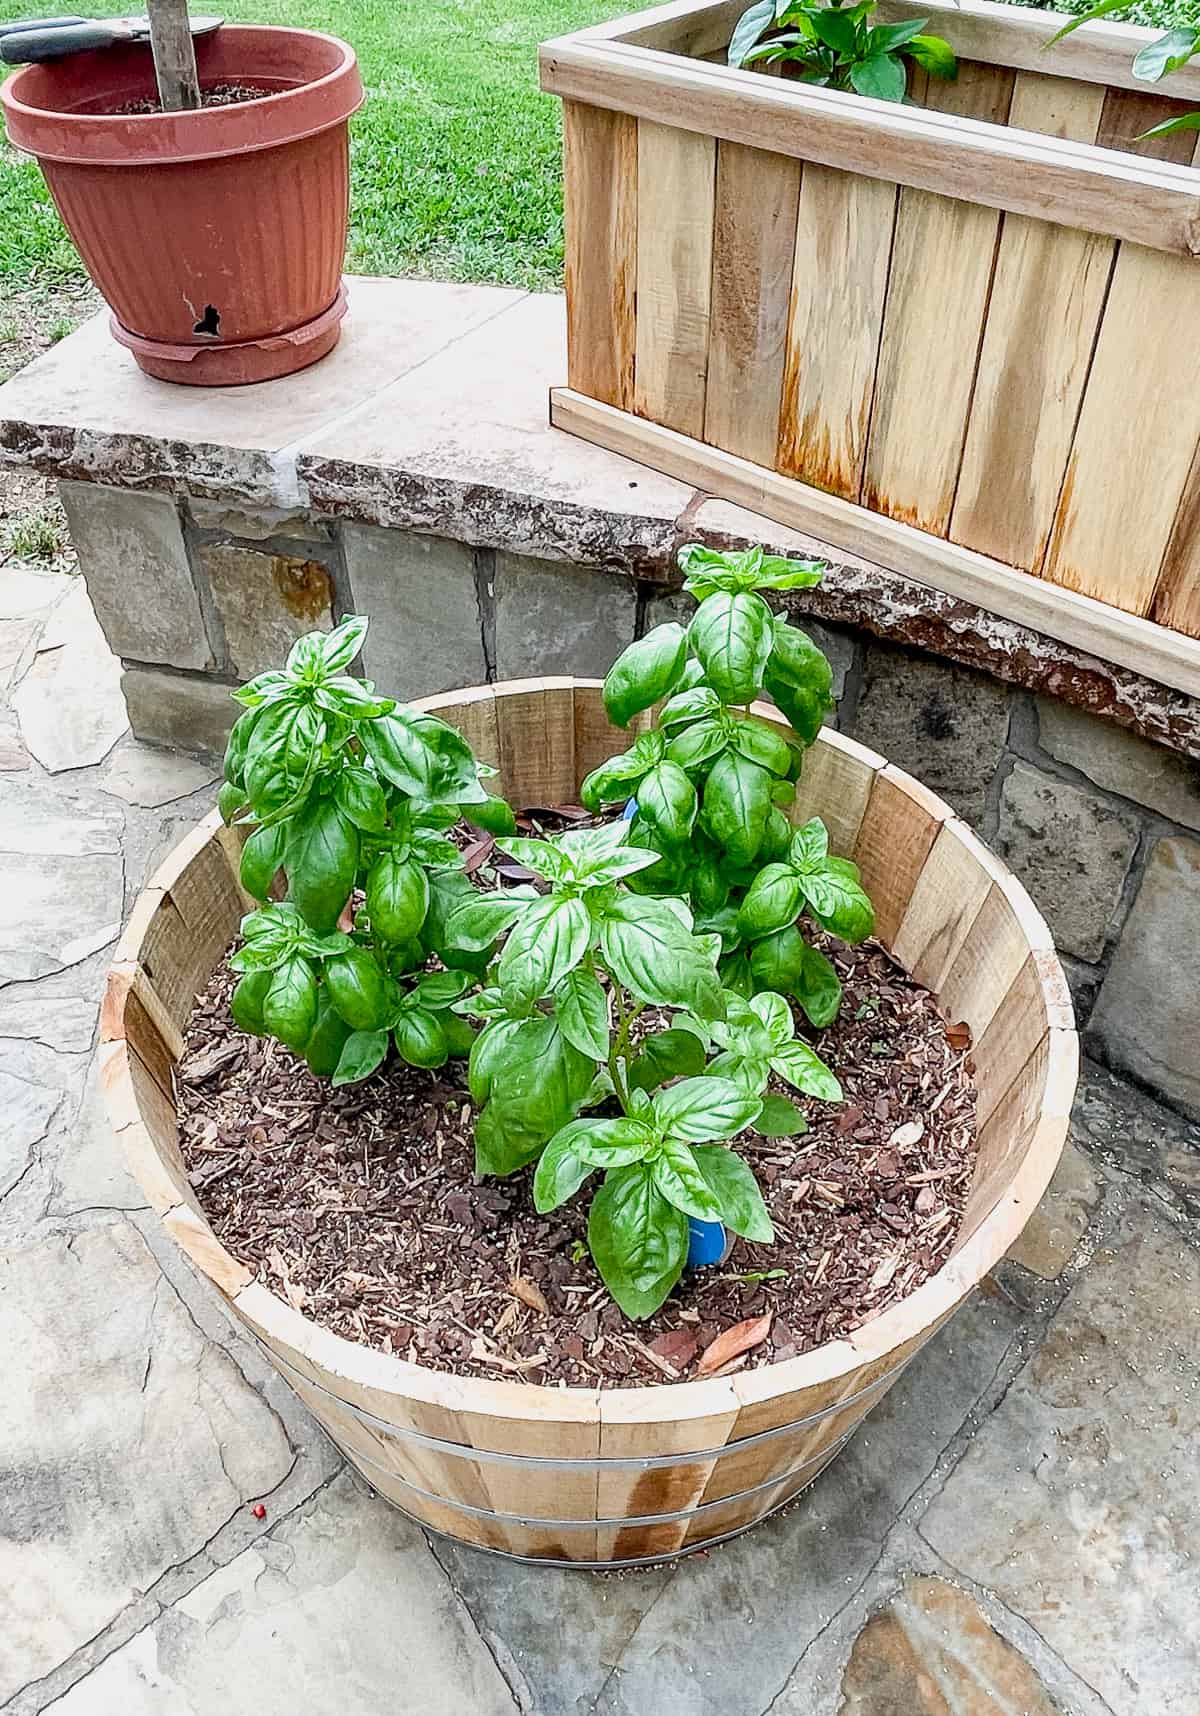 Three small basil plants in a pot.